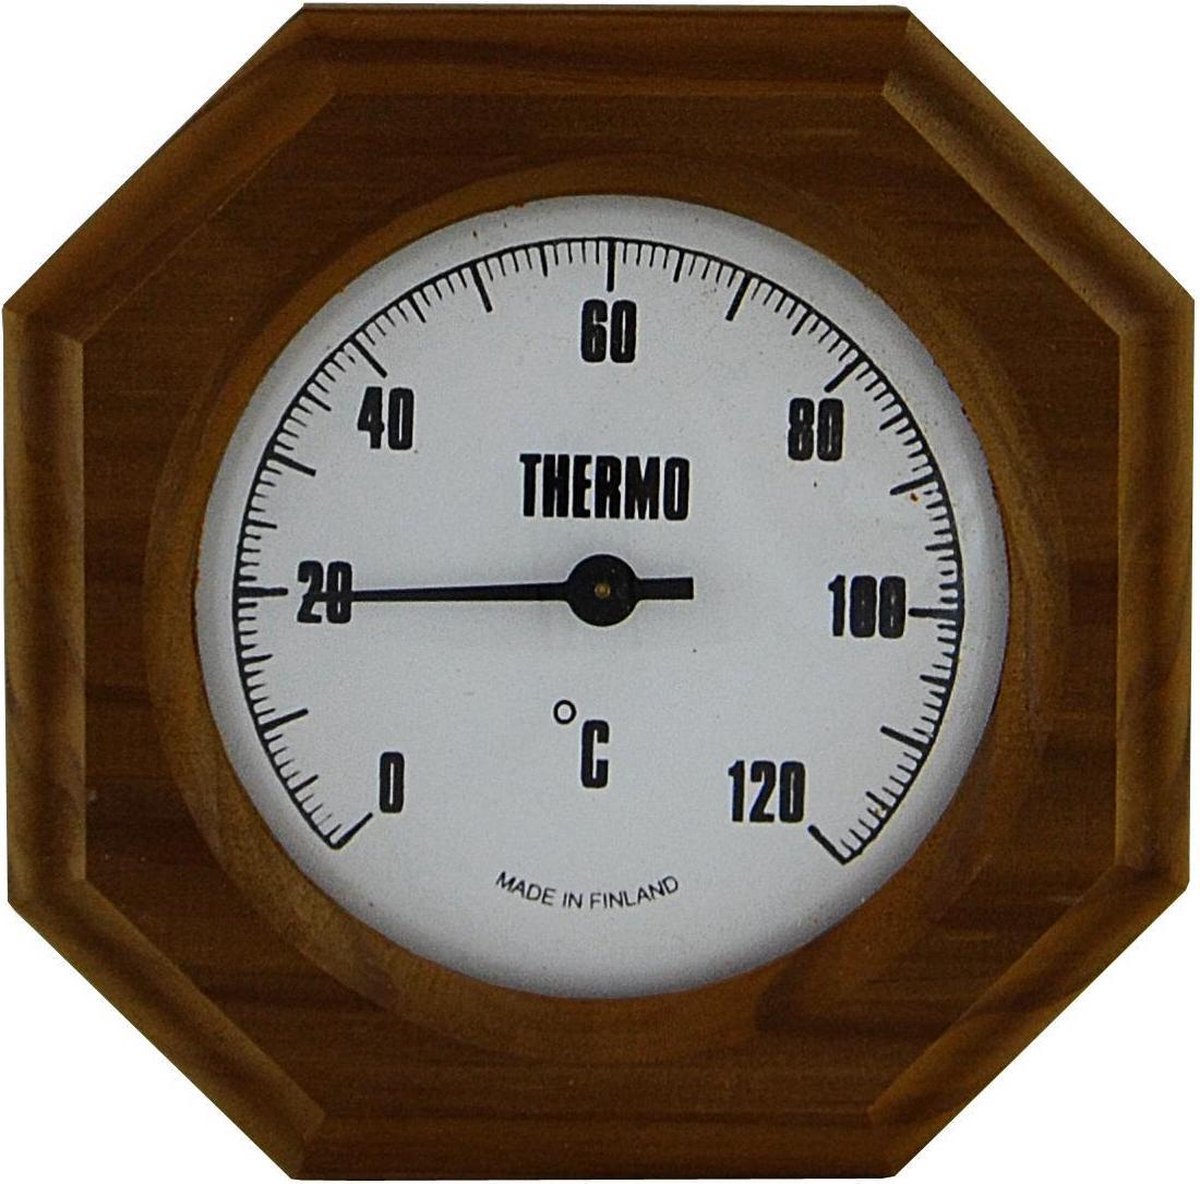 Saunia - sauna thermometer - heat treated wood - saunia